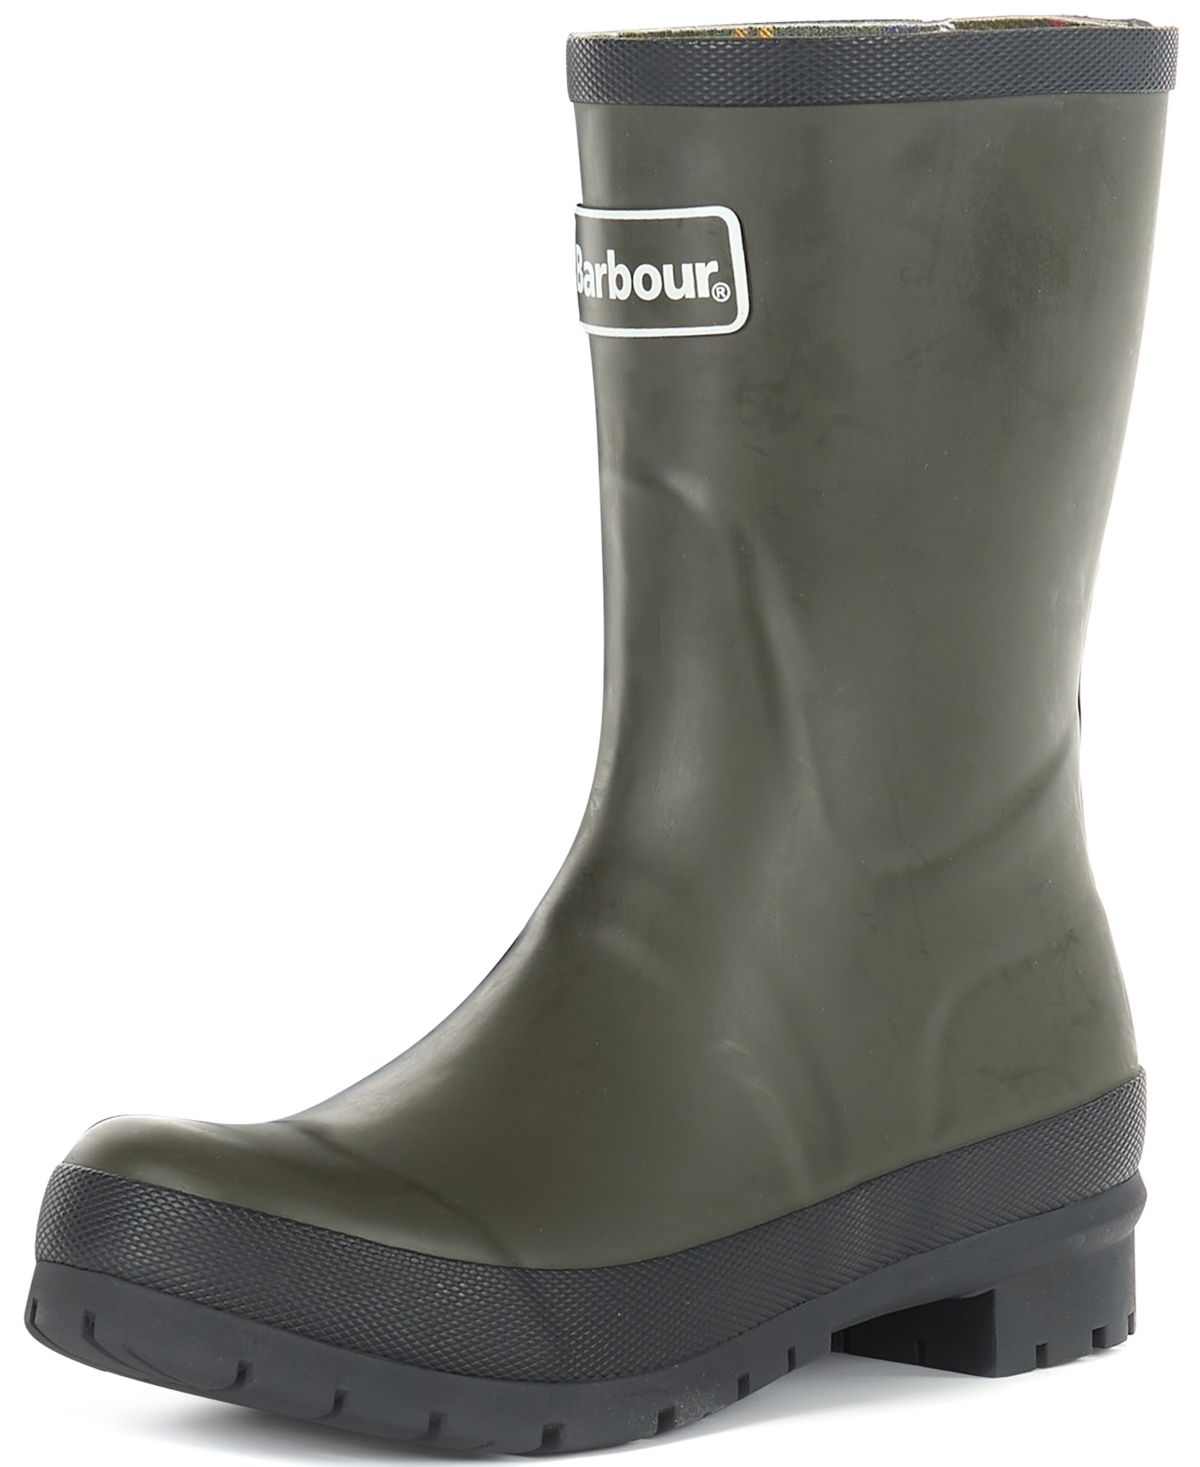 Barbour Women's Banbury Mid-Cut Rain Boots Women's Shoes | Macys (US)